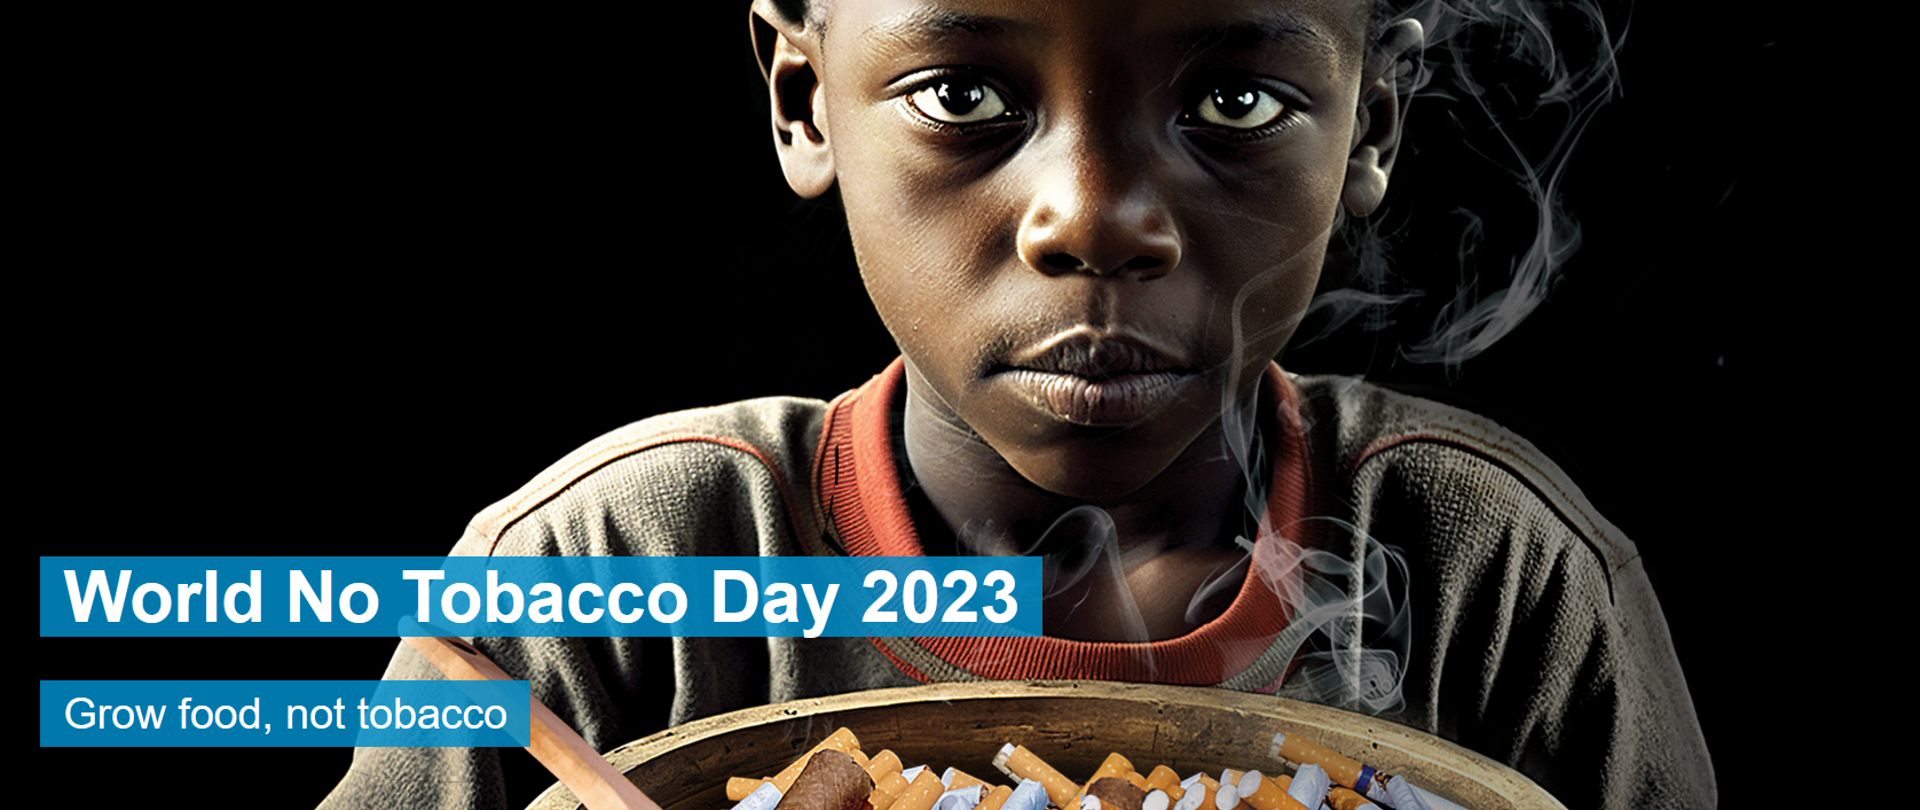 Światowy Dzień bez Tytoniu 2023 pod hasłem „Uprawiajmy żywność, nie tytoń” - zdjęcie nr 6